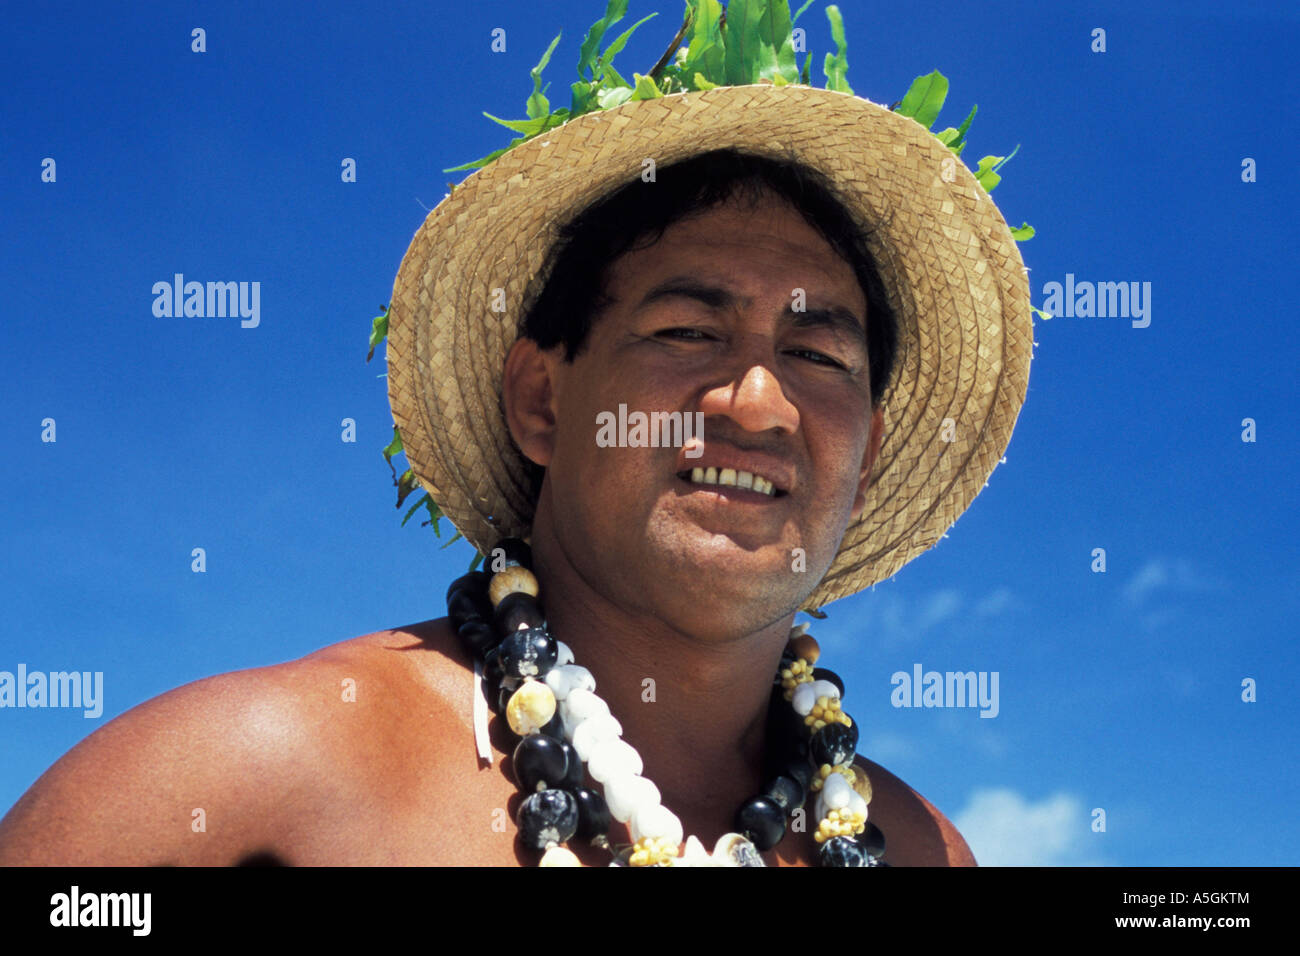 L'homme polynésien avec chapeau de paille, Polynésie Française Photo Stock  - Alamy